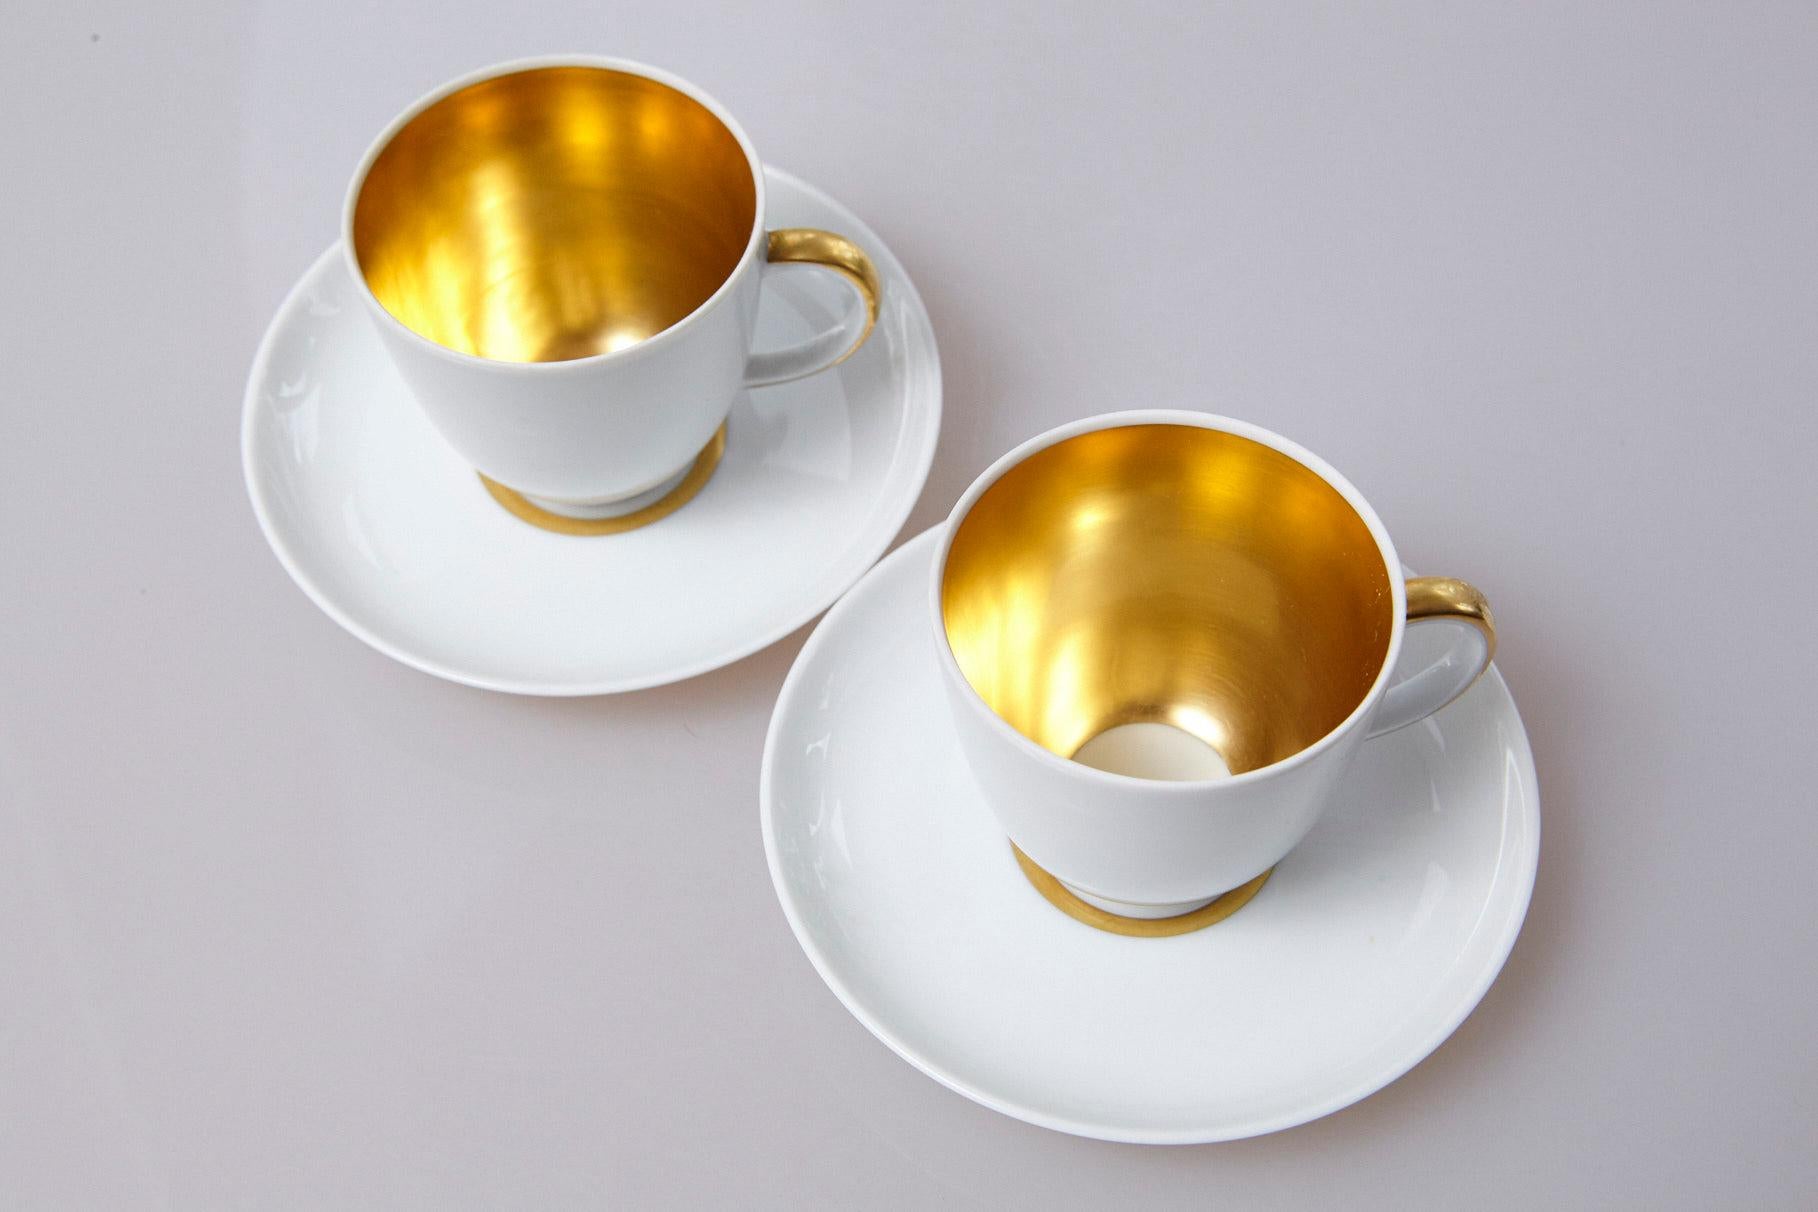 Set of 10 White and Gold Fürstenberg Porcelain Demitasse Cups & Saucers, Germany 2